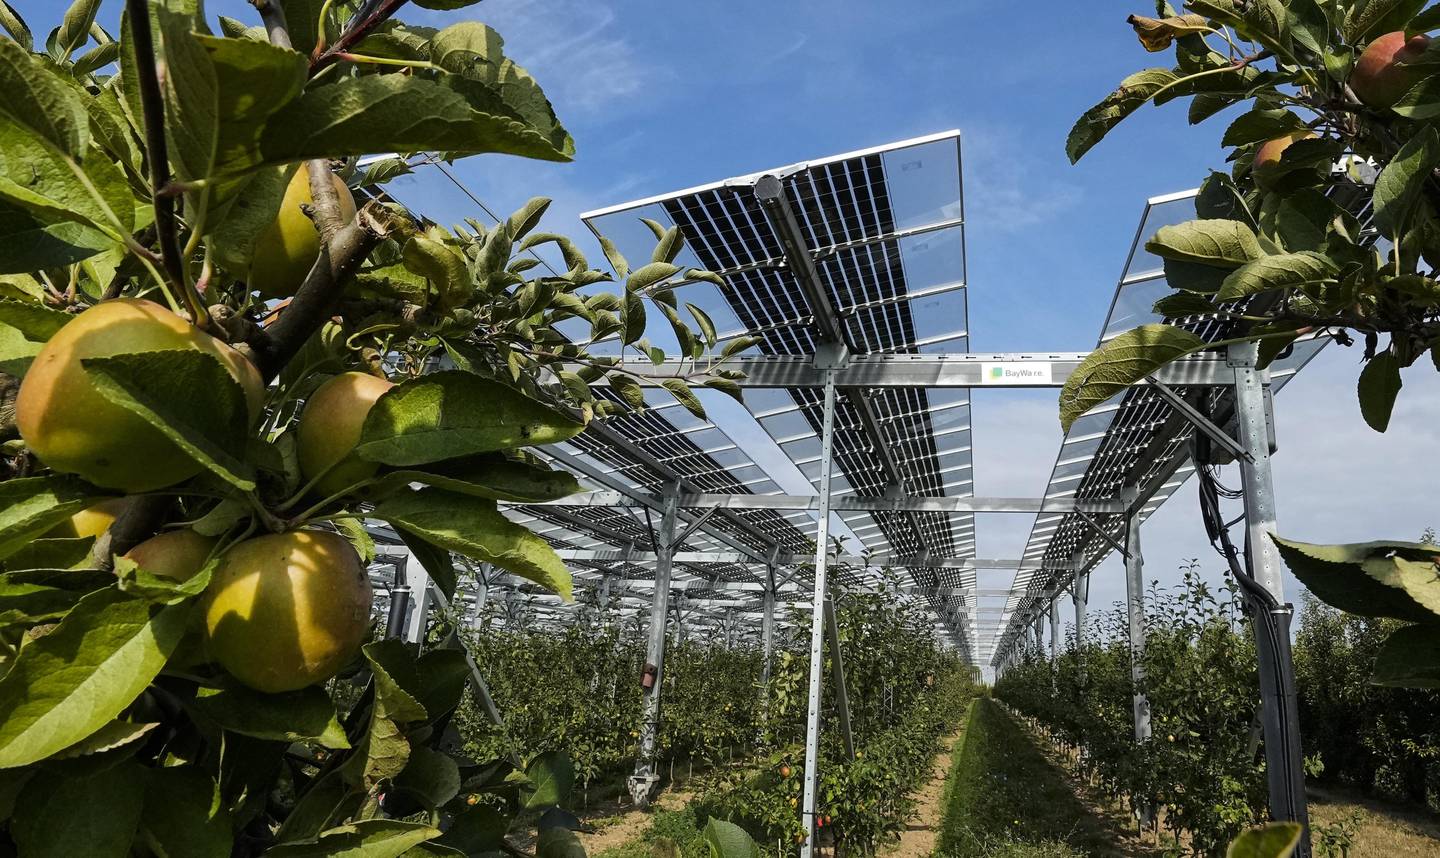 Stadig flere bønder i Europa setter opp store solcelleparker på dyrkbar mark. Håpet er at frukttrærne trives under panelene som i sin tur gir ekstra inntekt gjennom oppsamlet solenergi. Foto: Martin Meissner / AP / NTB